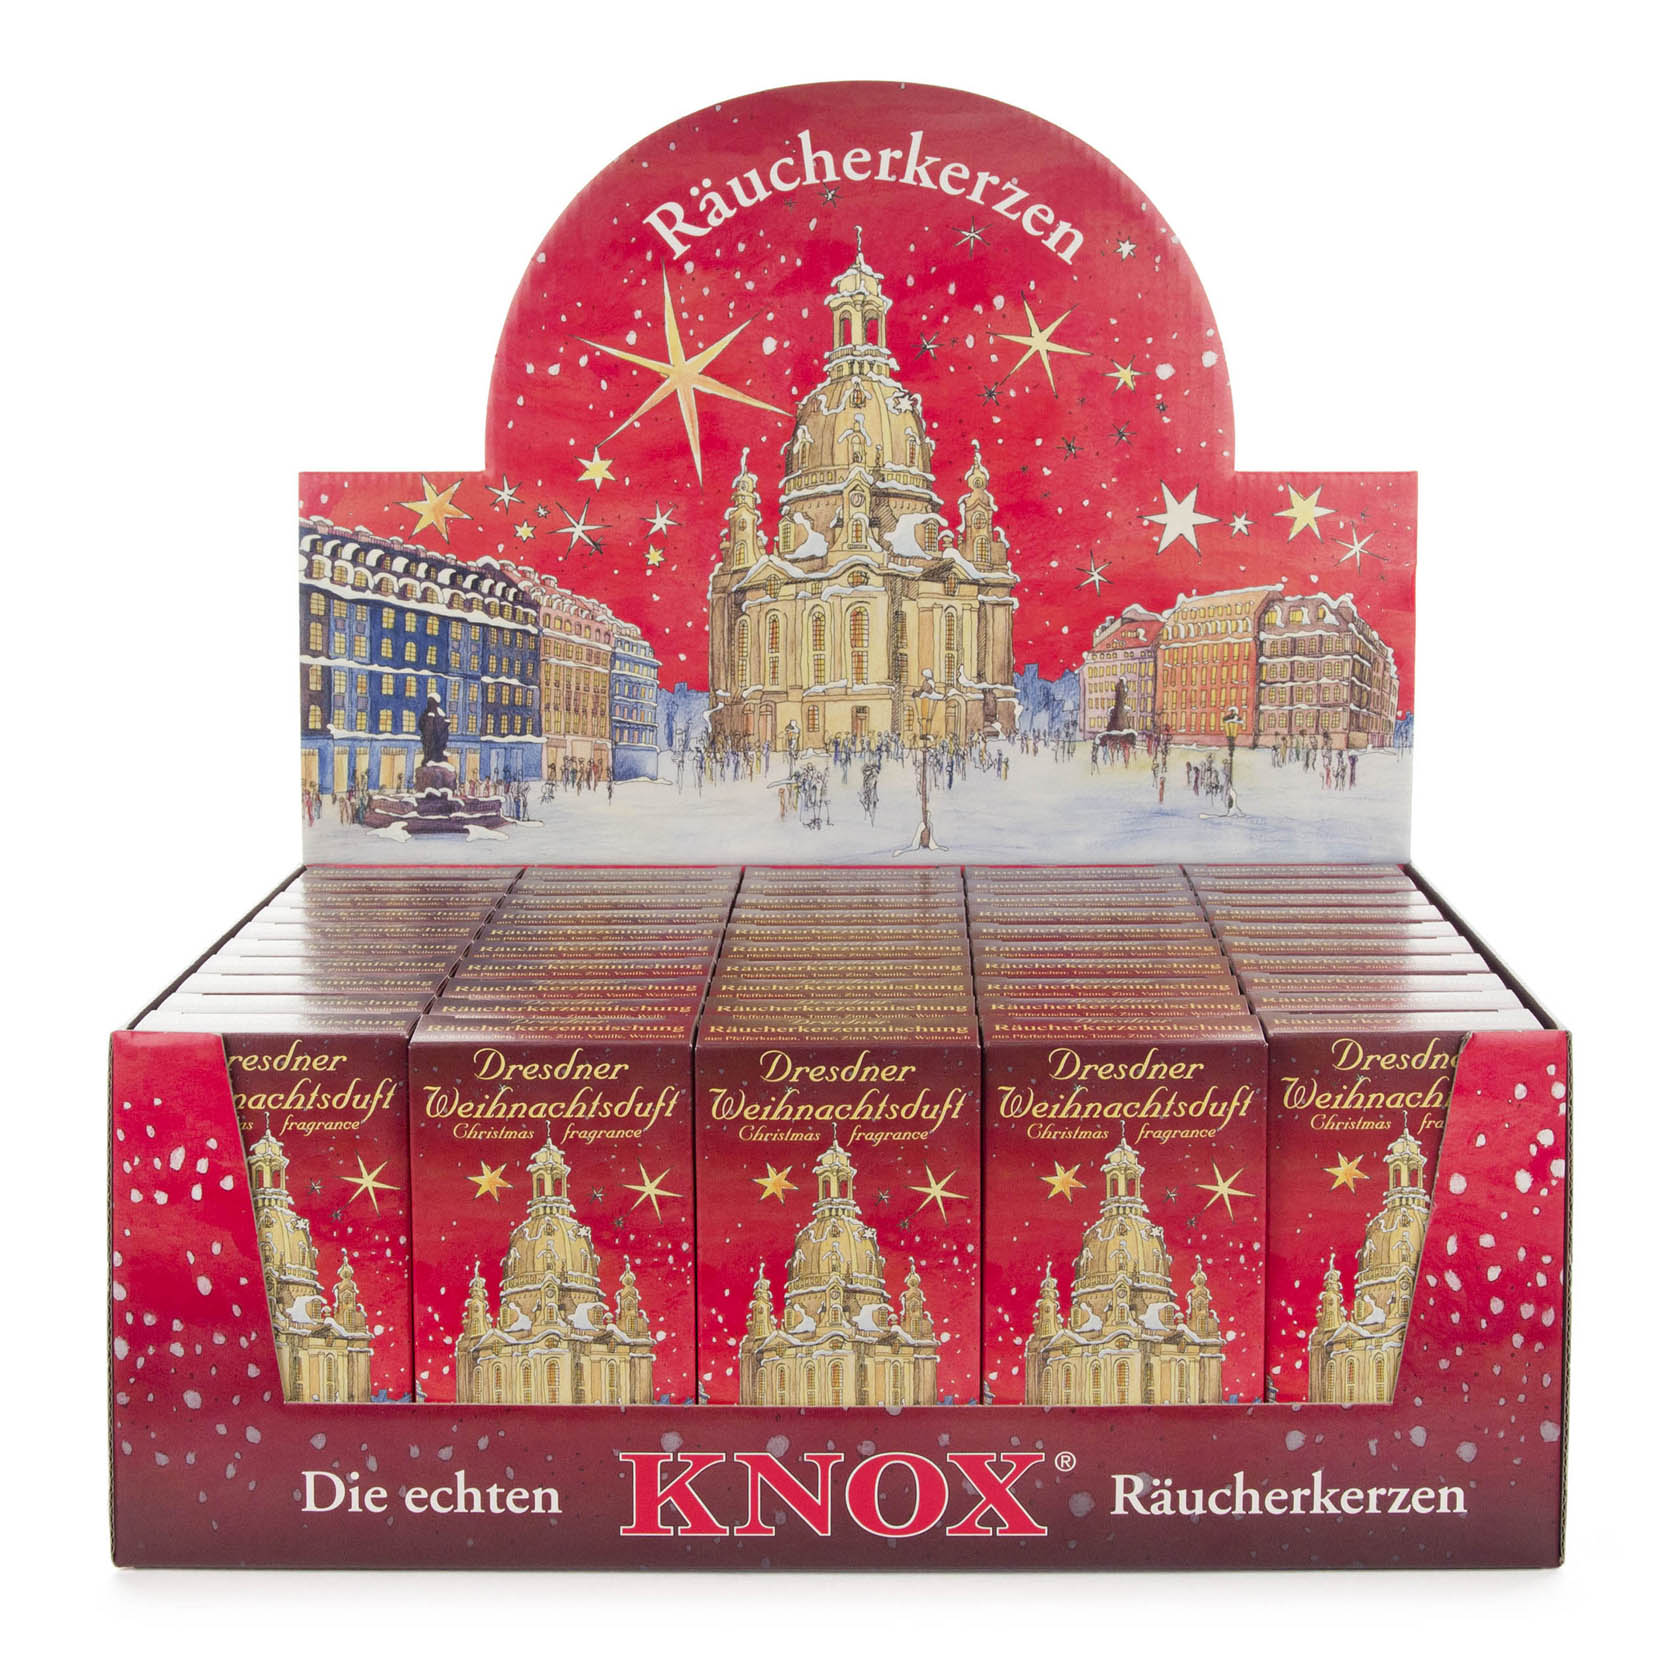 Verkaufsdisplay KNOX Räucherkerzen Dresdner Weihnachtsduft, rot 50 Schachteln à 24 Stück im Dregeno Online Shop günstig kaufen